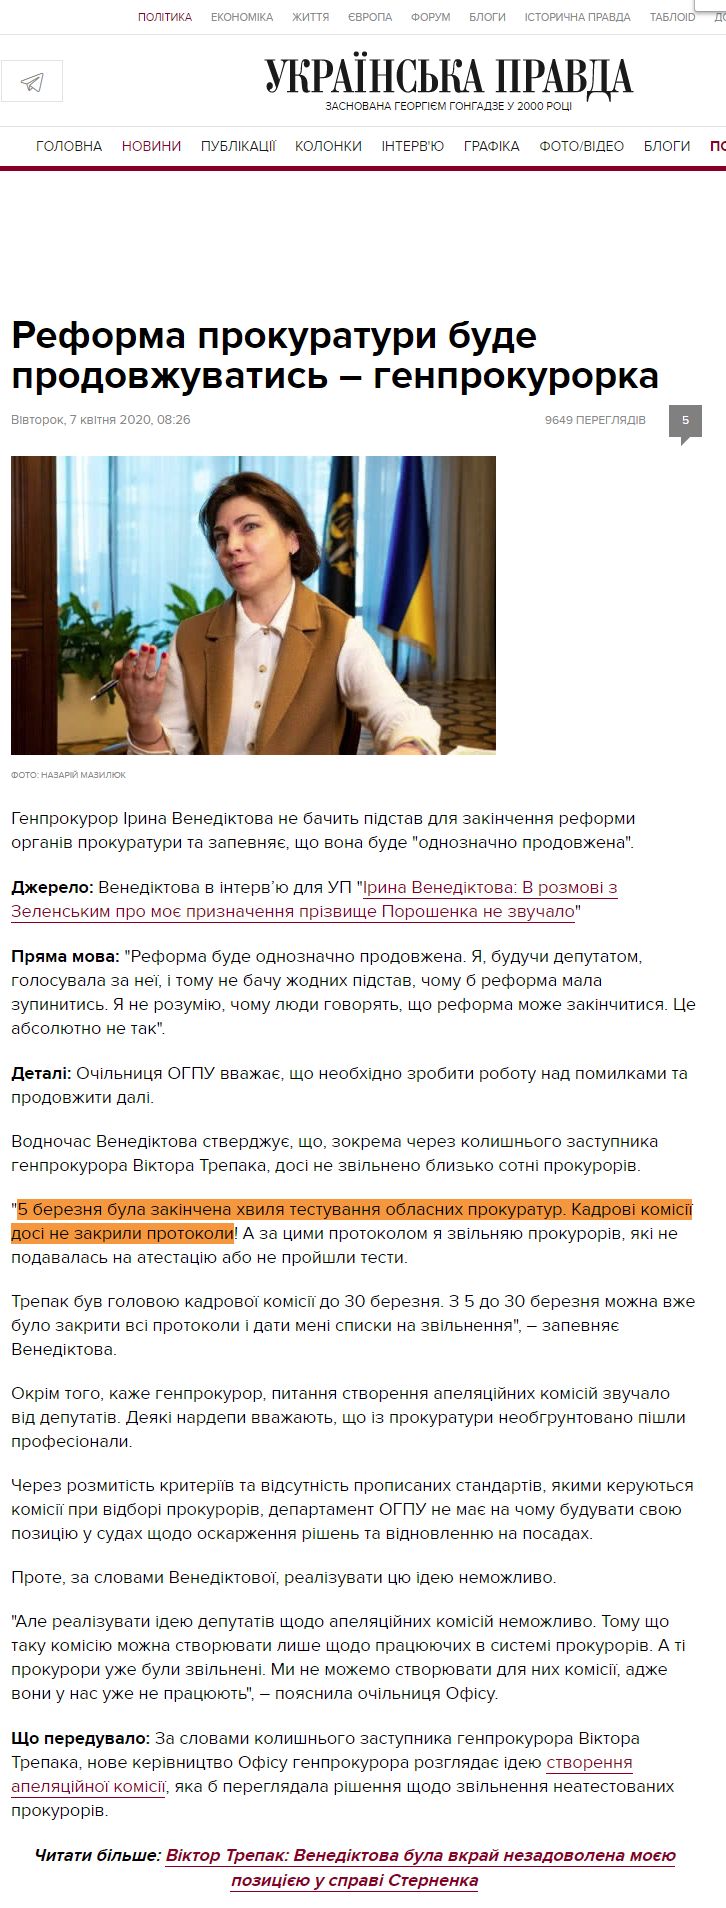 https://www.pravda.com.ua/news/2020/04/7/7246793/